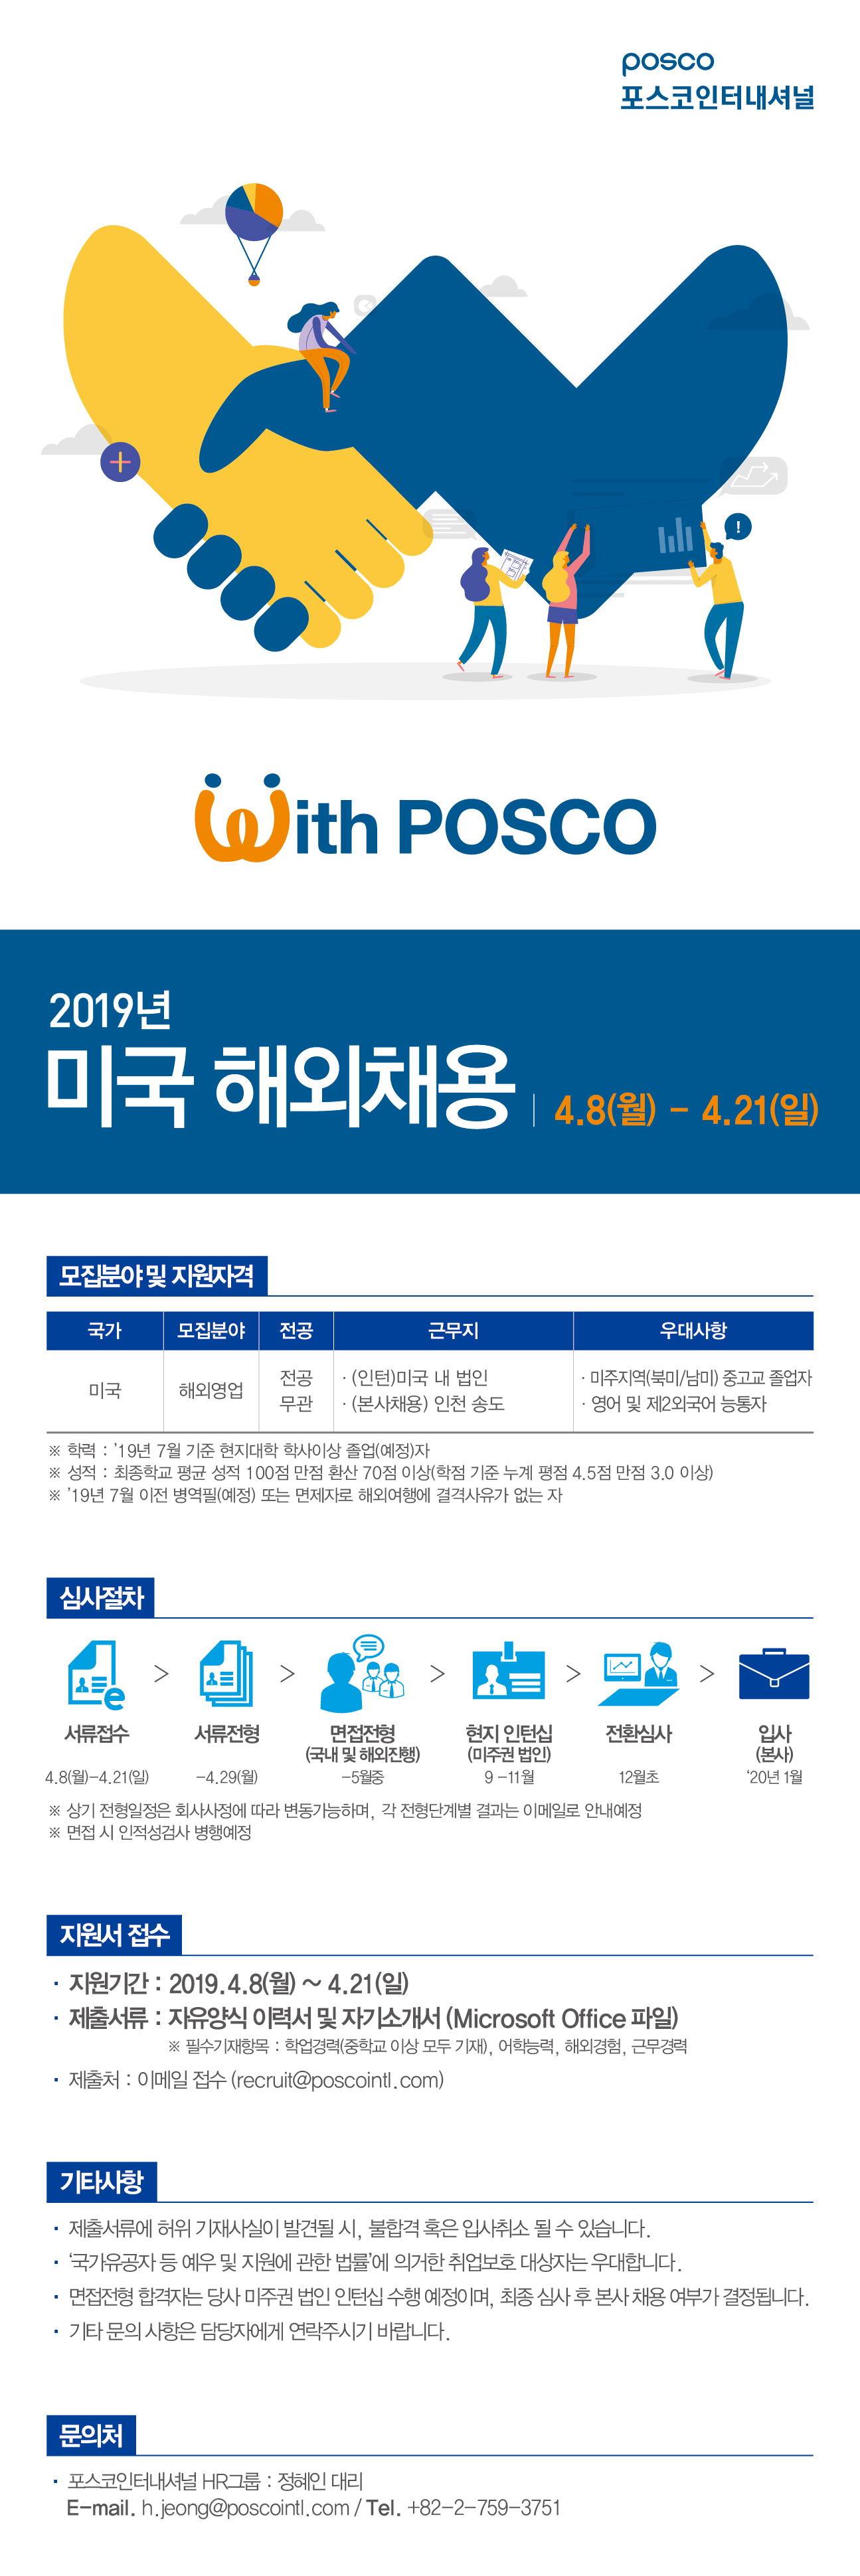 2019년 상반기 포스코_해외채용 웹플라이어(미국)_최종수정.jpg